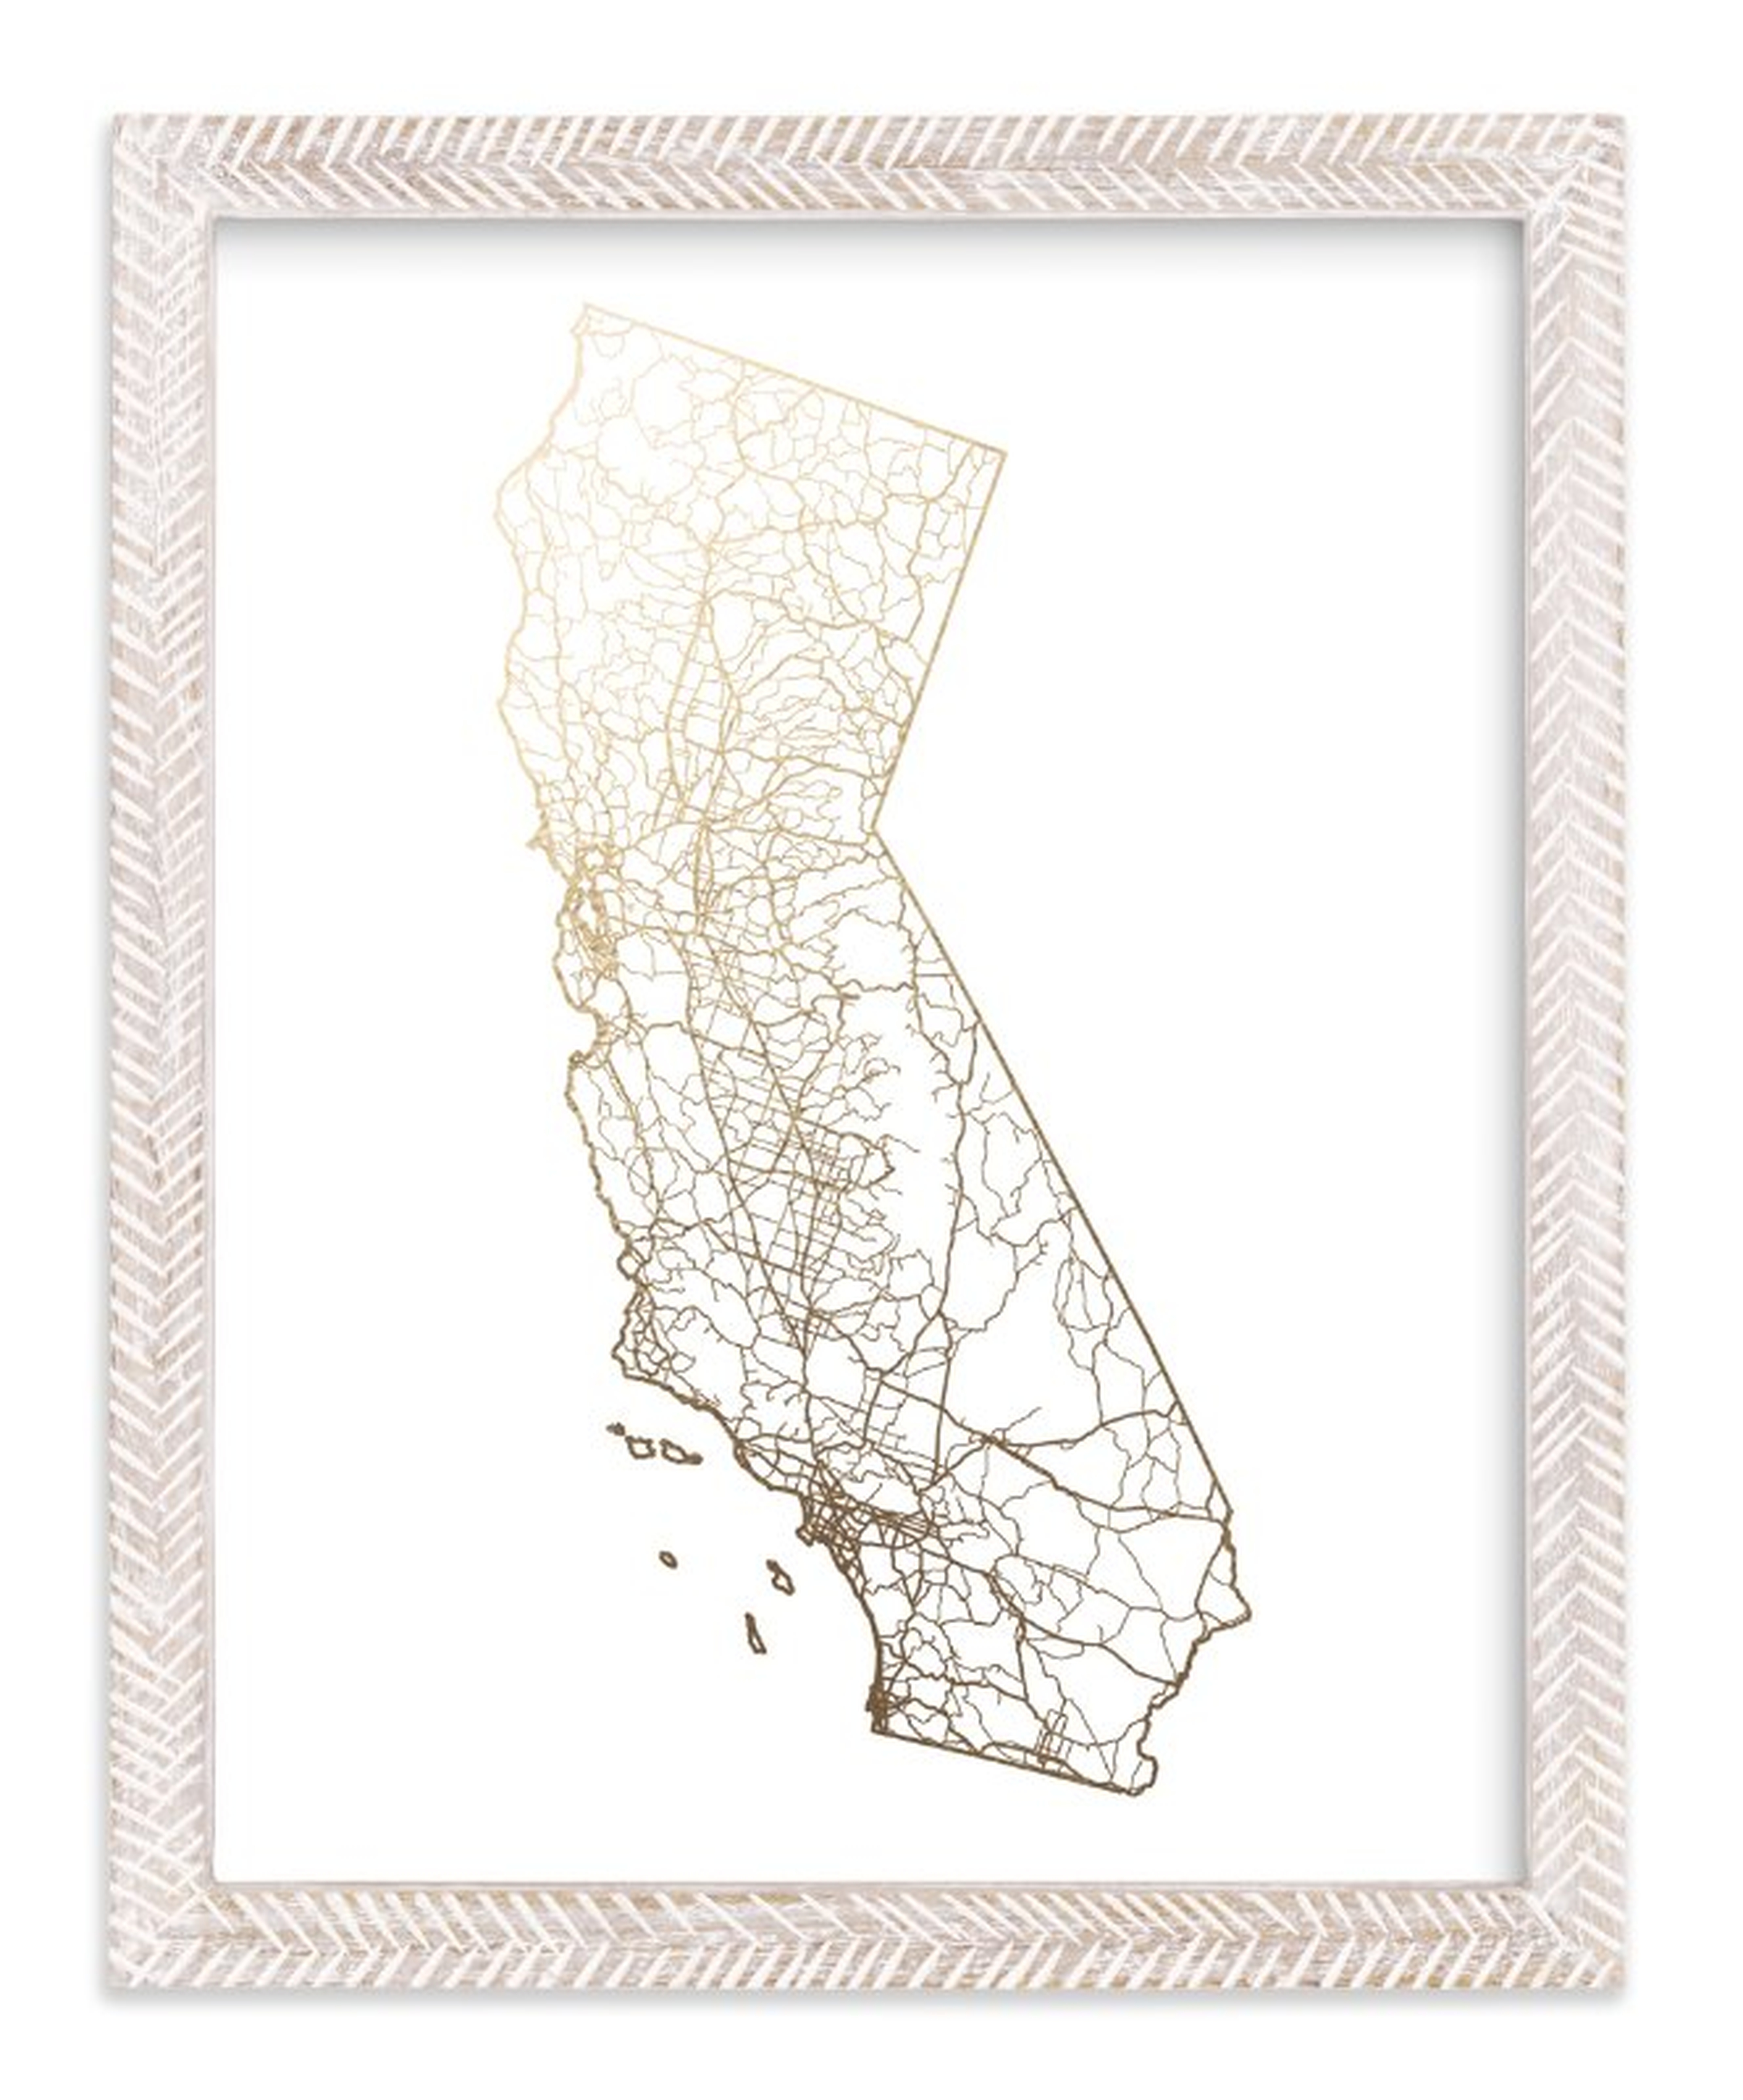 California Map 11" x 14" Framed Print in Whitewashed Herringbone Frame - Minted